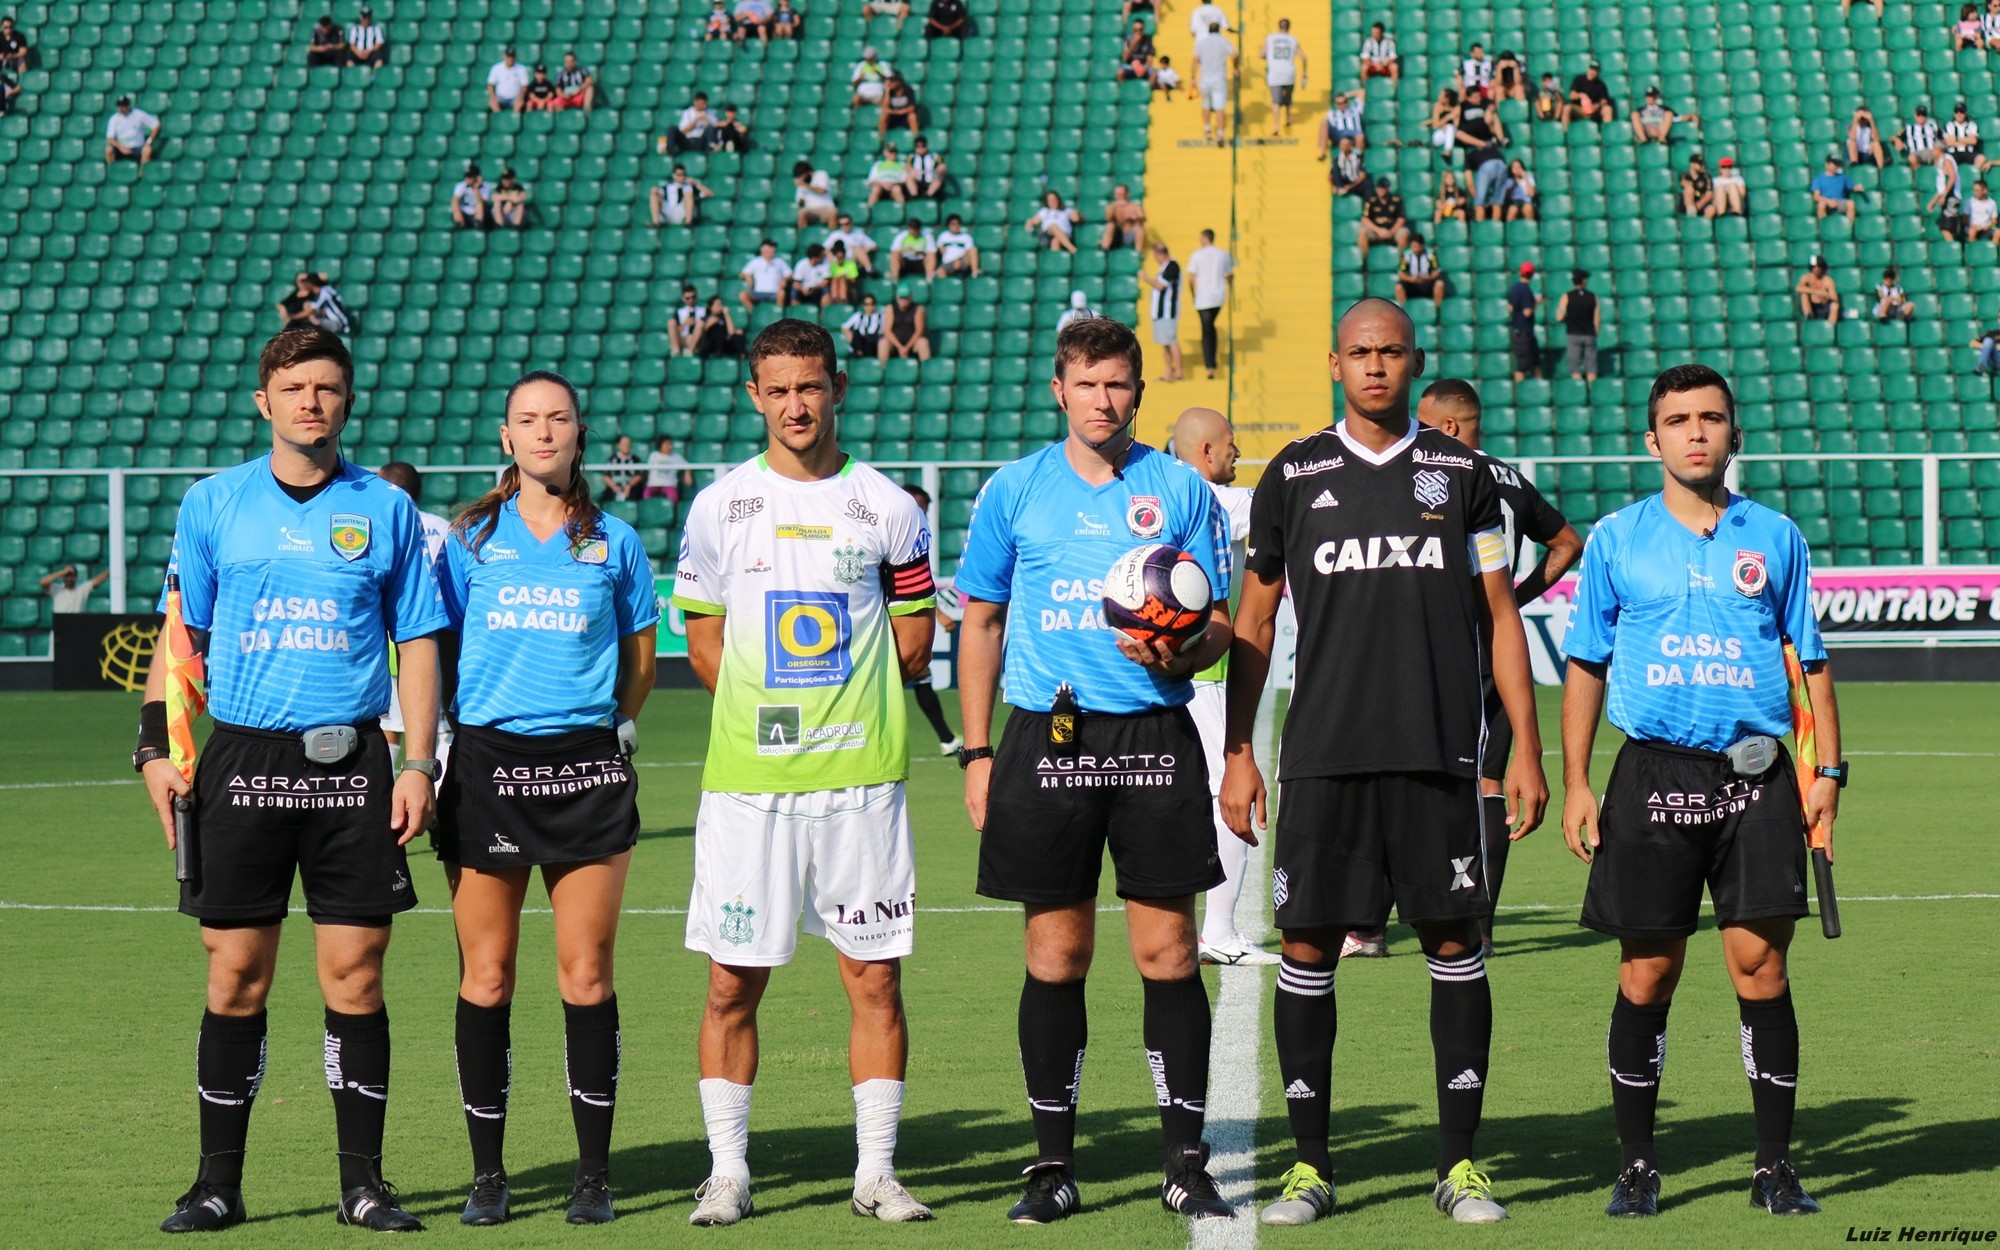 GloboEsporte.com > Futebol > Palmeiras - NOTÍCIAS - Roque Júnior faz  trabalho especial em Atibaia para melhorar o entrosamento